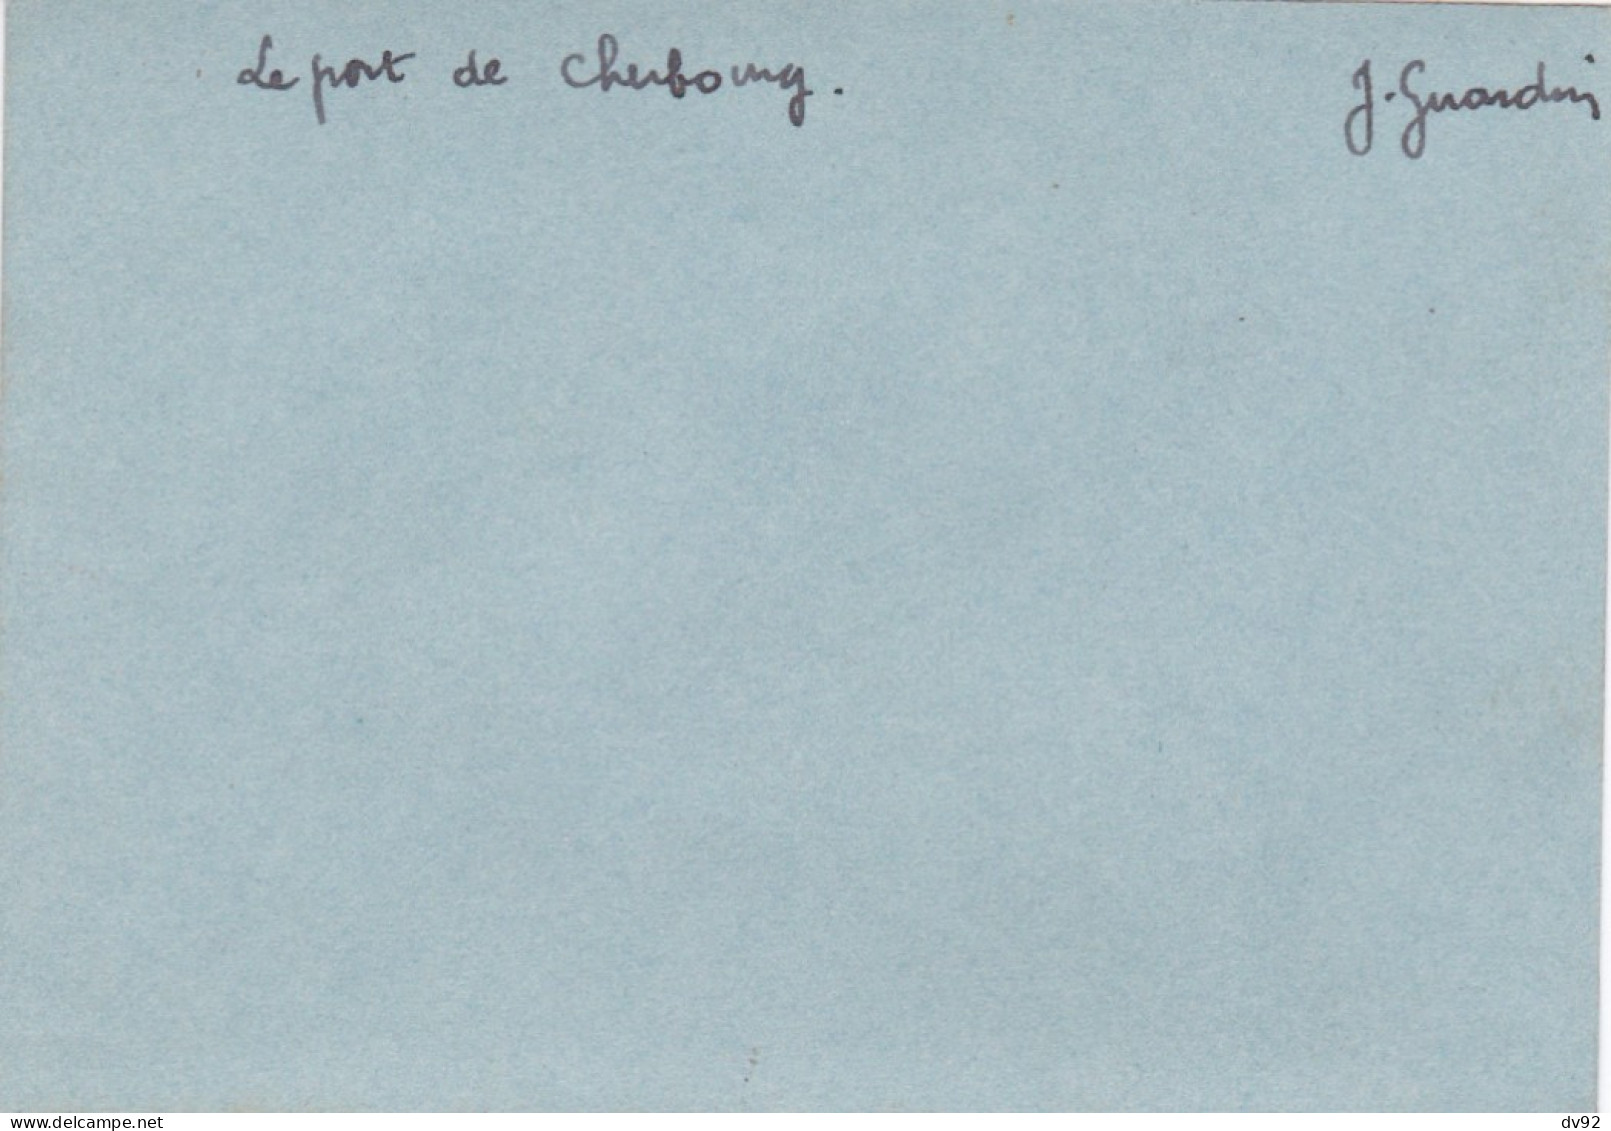 MANCHE LE PORT DE CHERBOURG CIRCA 1920 - Bateaux